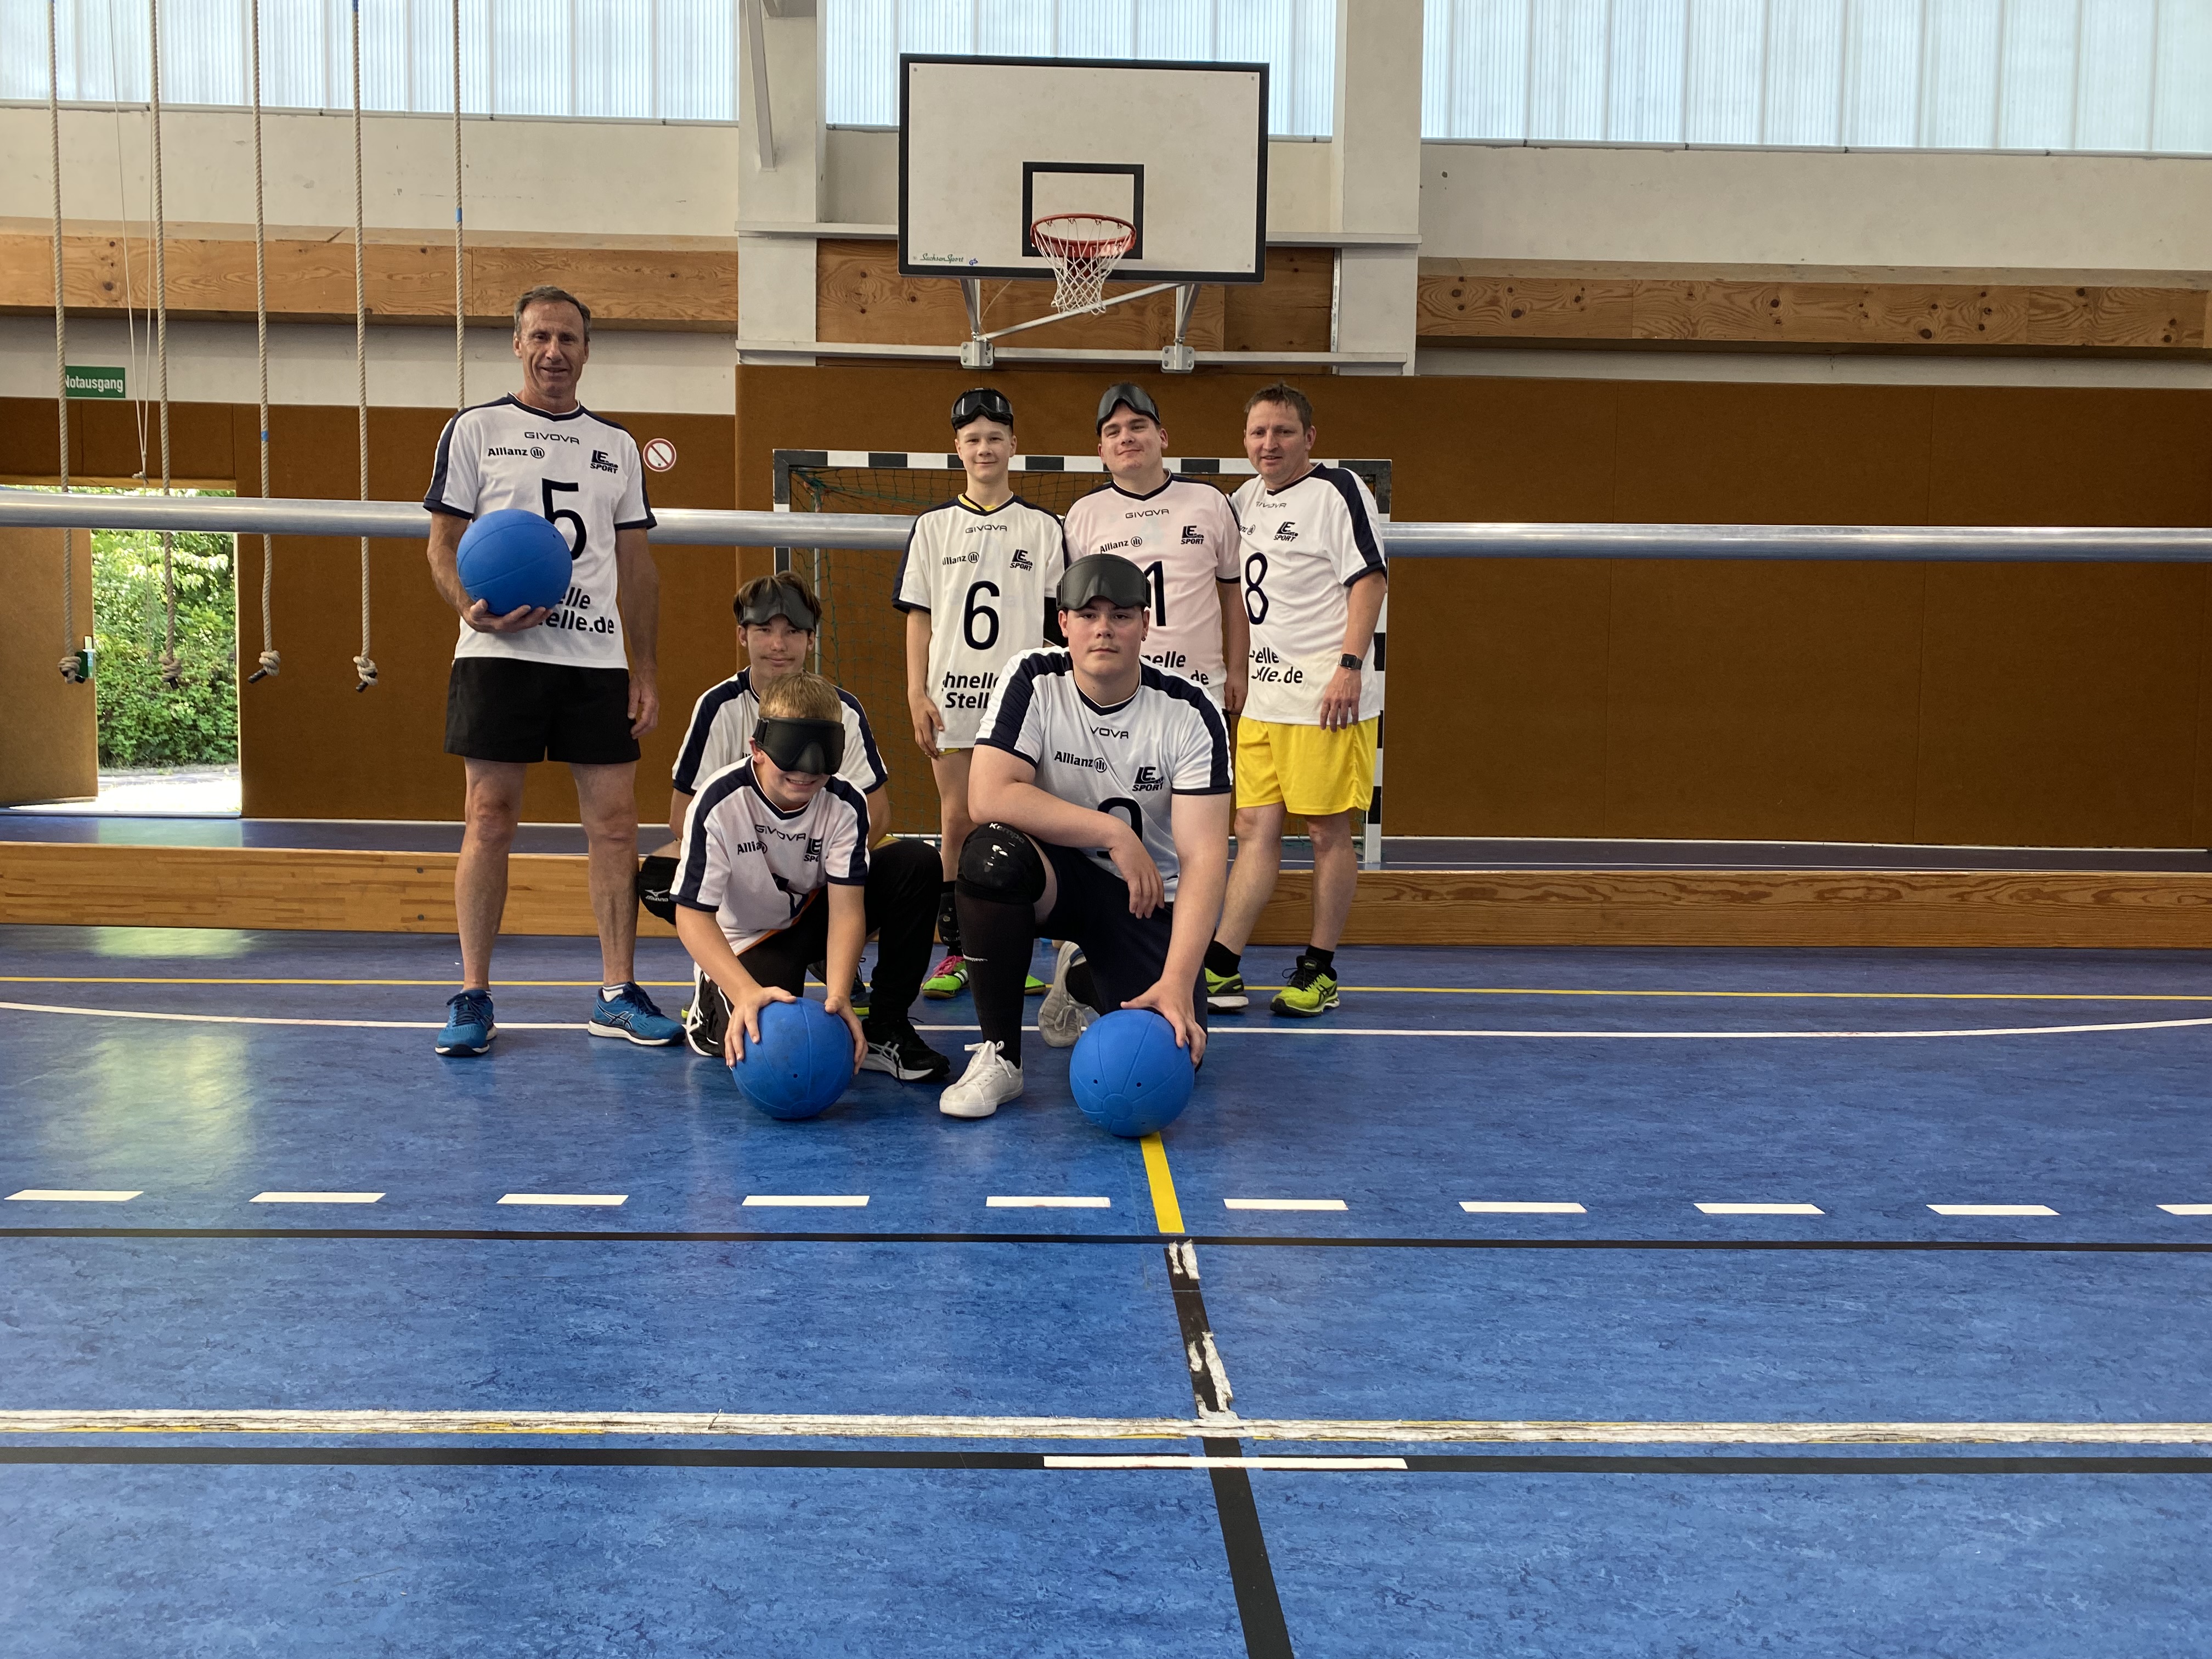   Mit vollem Körpereinsatz | Leipziger Team gewinnt Goalball-Finale bei Jugend trainiert  